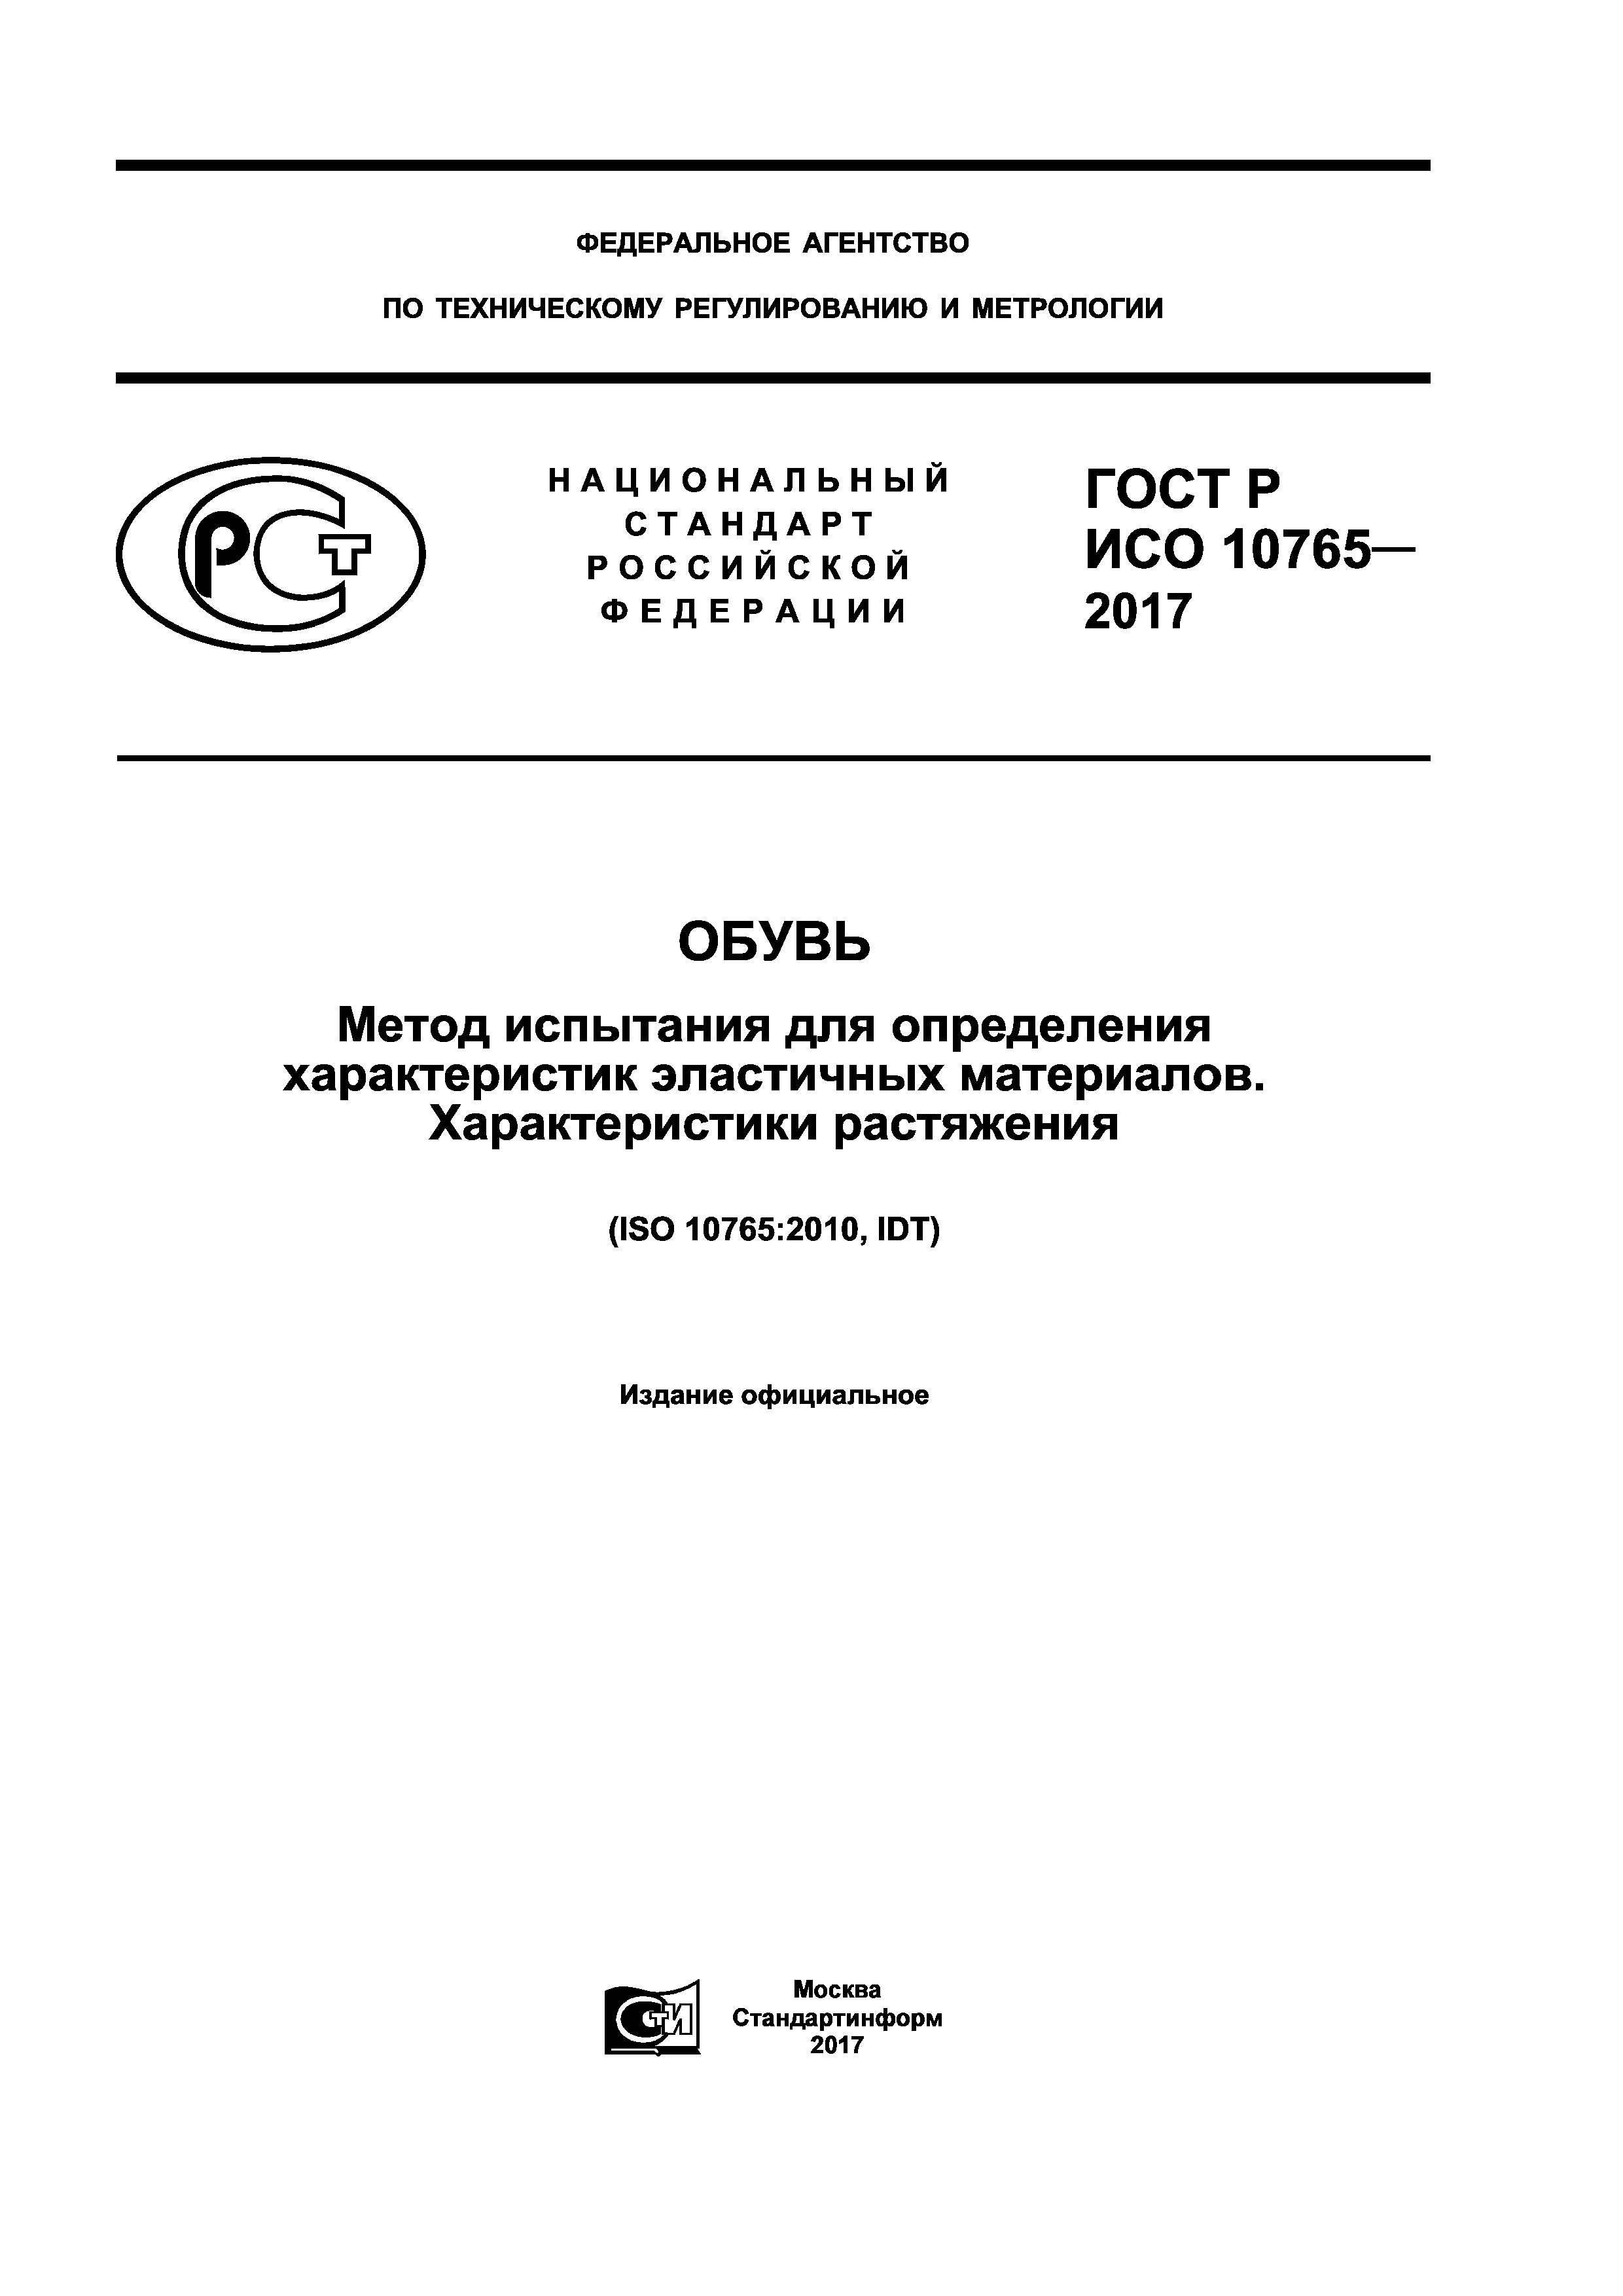 ГОСТ Р ИСО 10765-2017